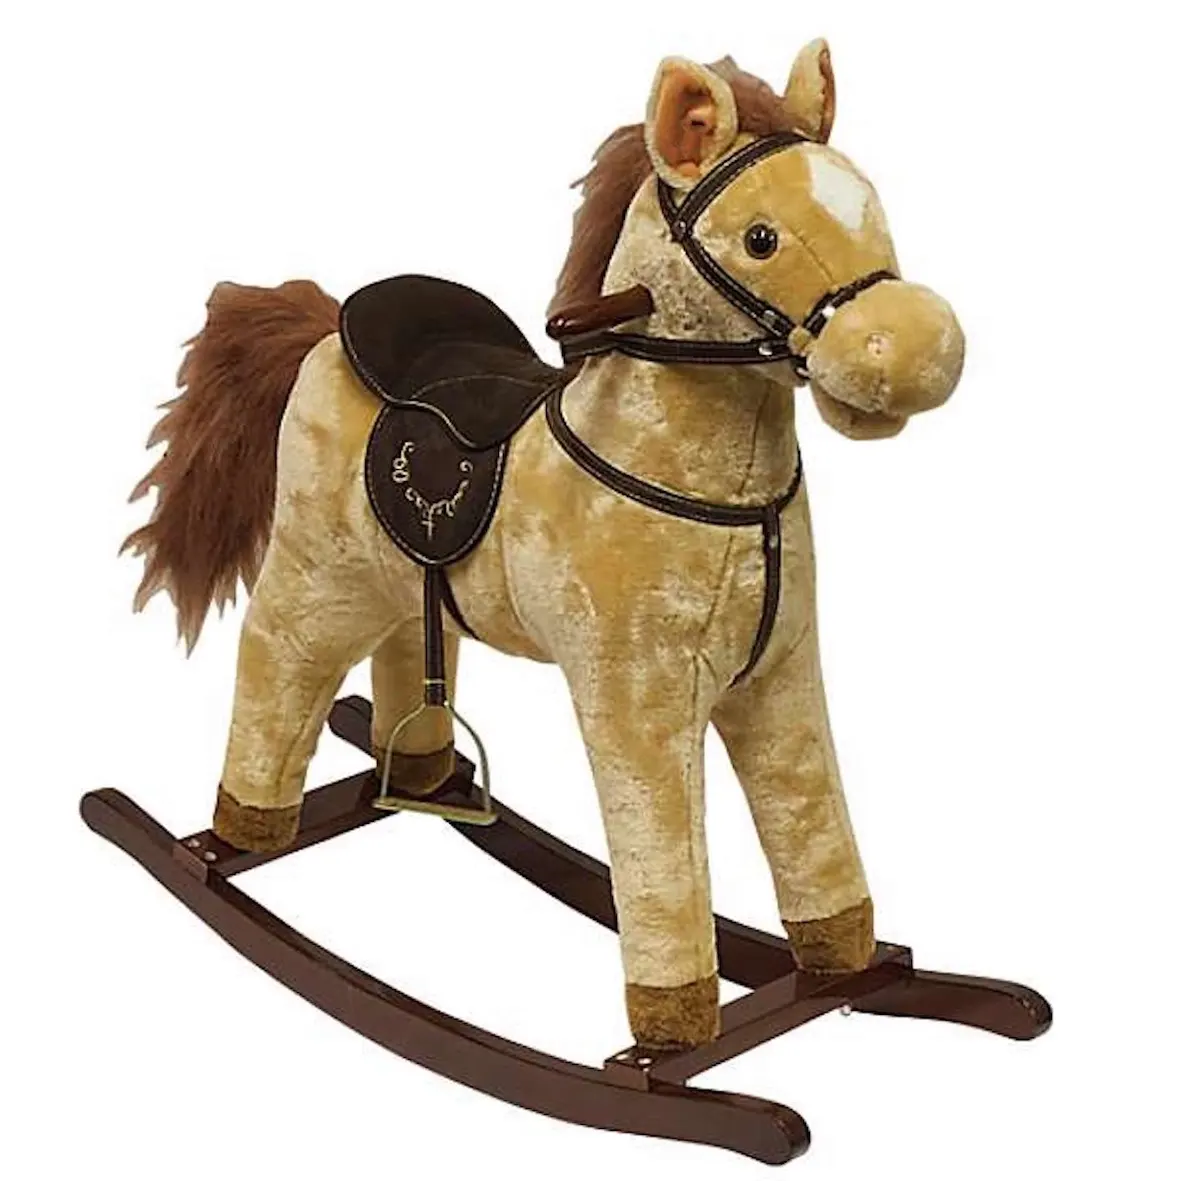 Cavallo a dondolo e equitazione in peluche Color marrone chiaro americano a buon mercato